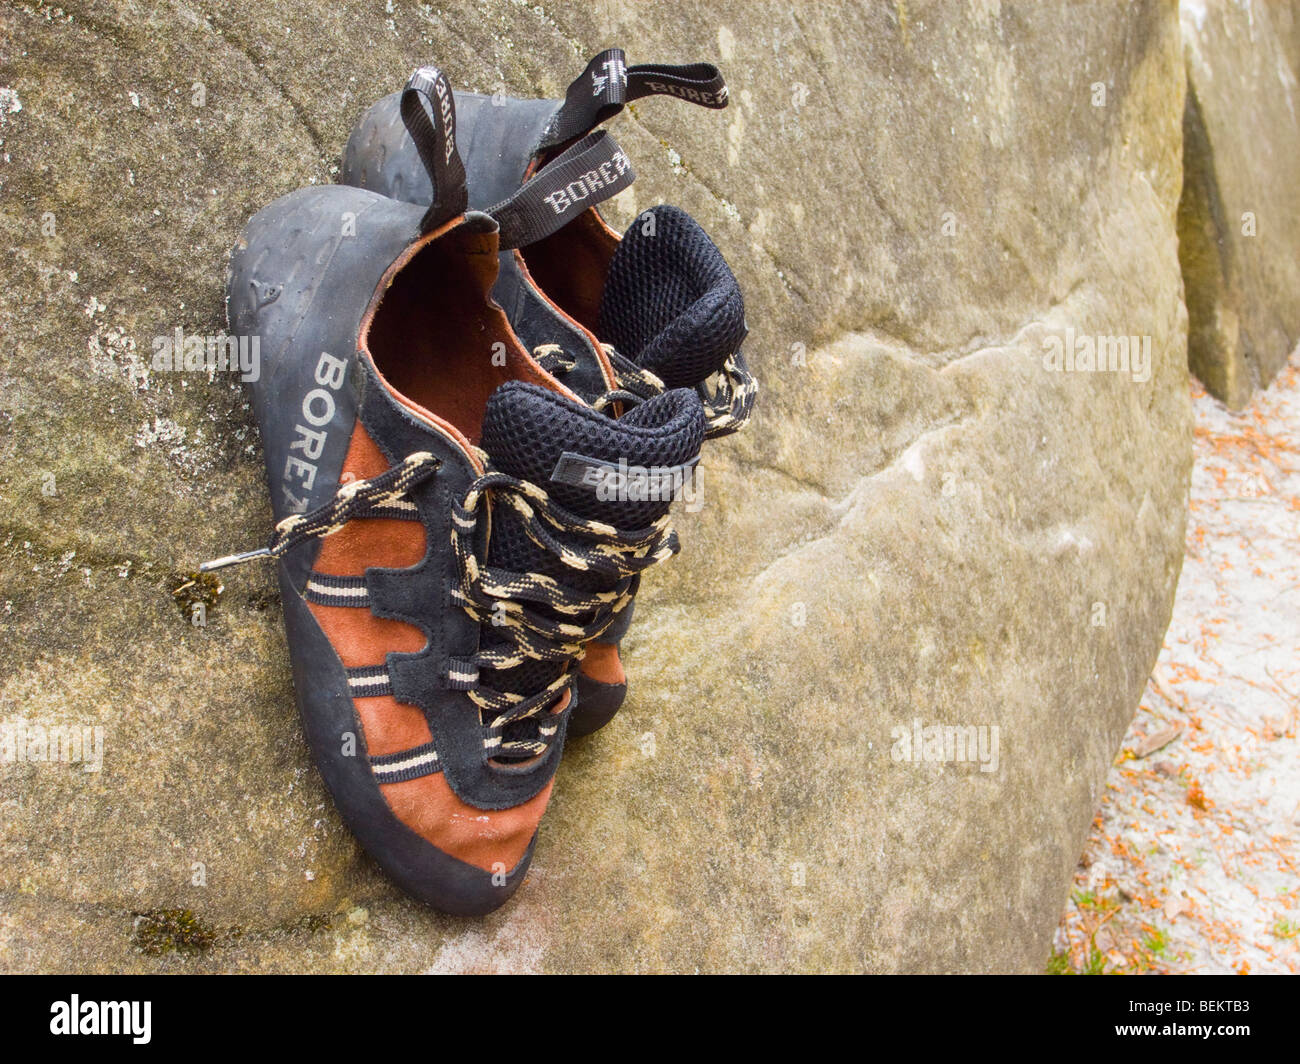 Paire de chaussures d'escalade / rocher posé sur un rocher boulder Banque D'Images